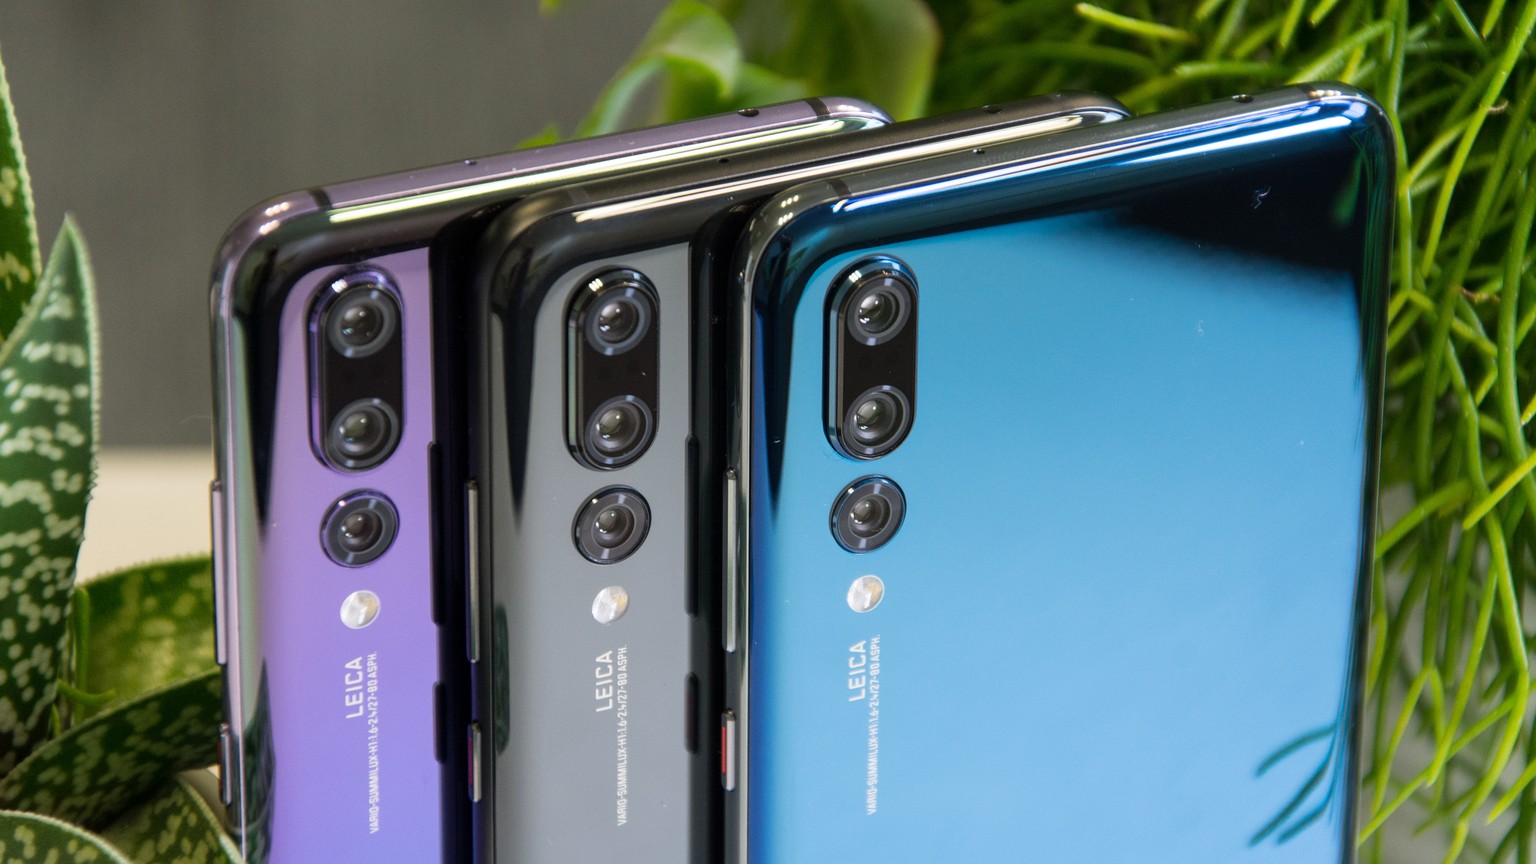 Das P20 Pro in den Farben Twilight, Schwarz und Blau ist das erste Smartphone mit einer Triple-Kamera.&nbsp;